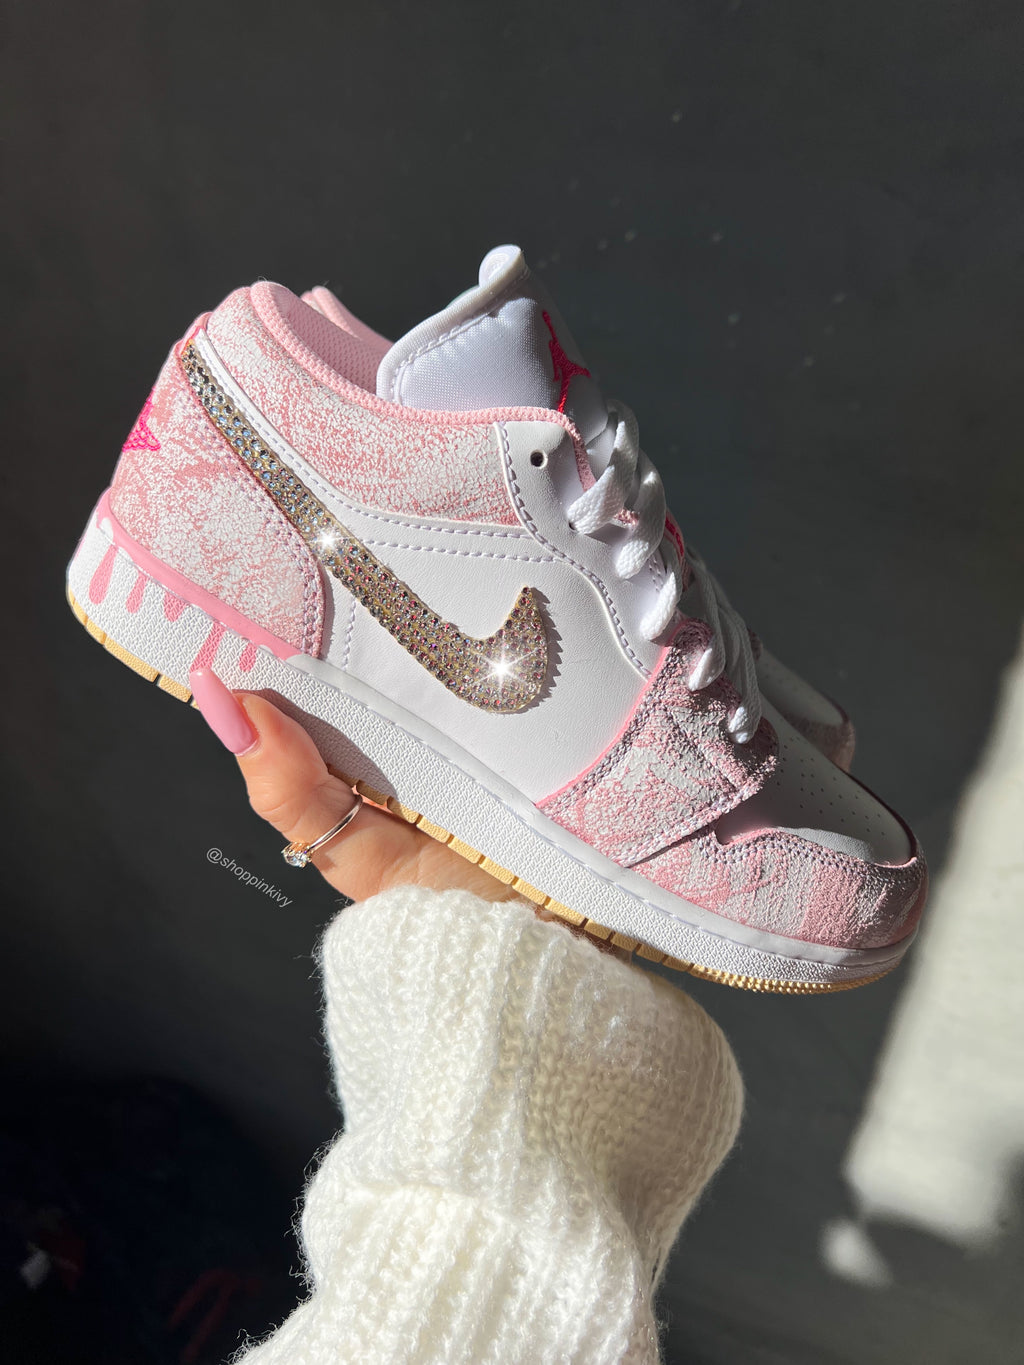 Neon Orange Swarovski Womens Nike Dunk Shoes – Pink Ivy